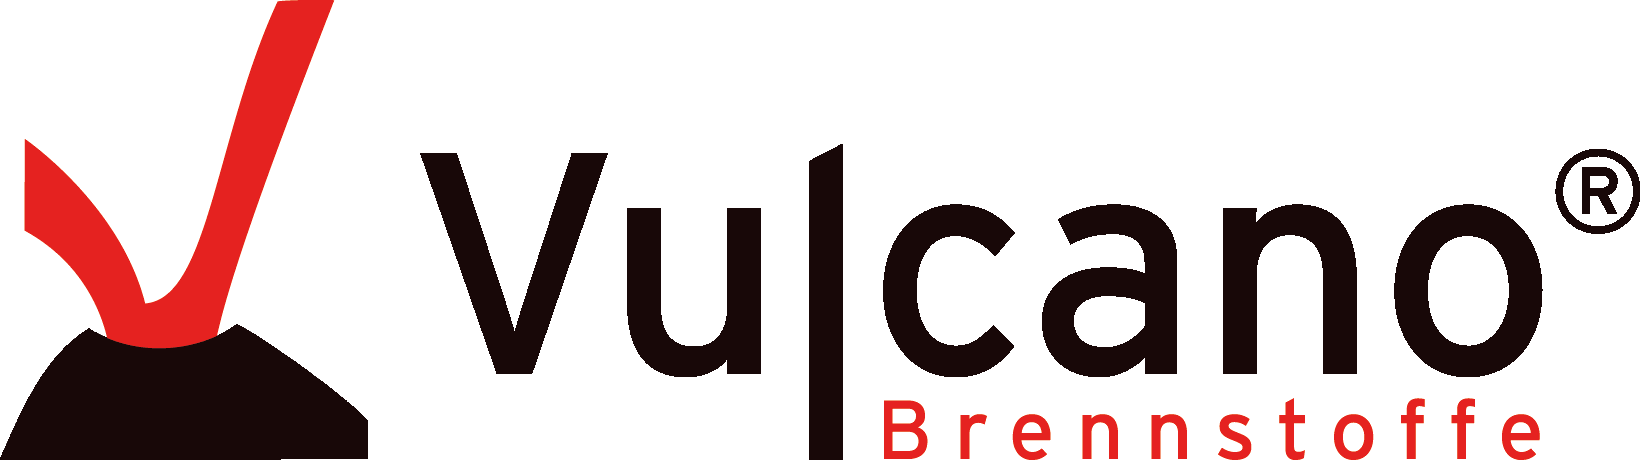 Logo der Vulcano Brennstoffe GmbH.